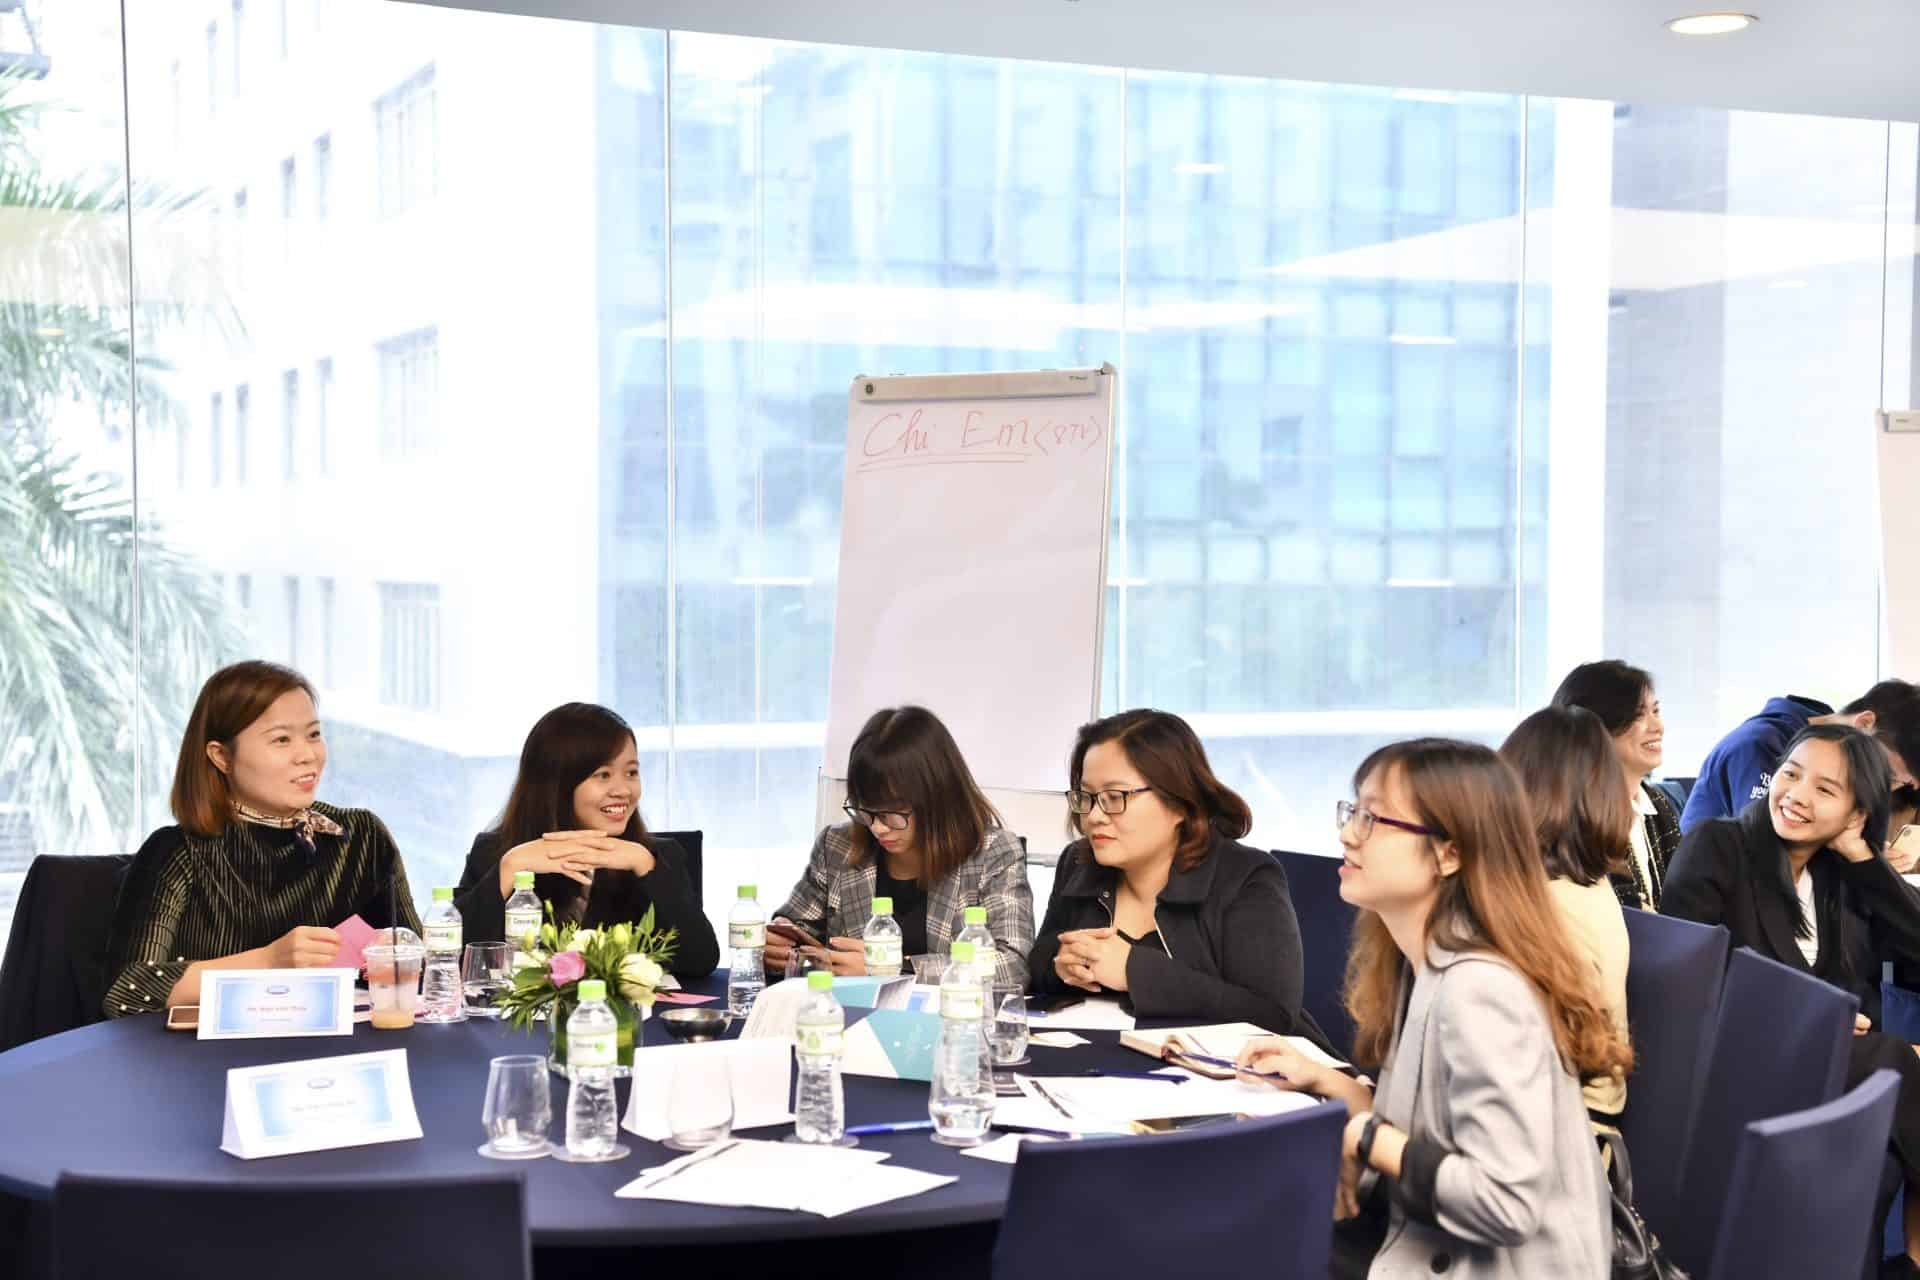 Workshop "Giải mã Kế hoạch đào tạo cùng HR & CEO" ngày 31.10.2020 tại Hà Nội